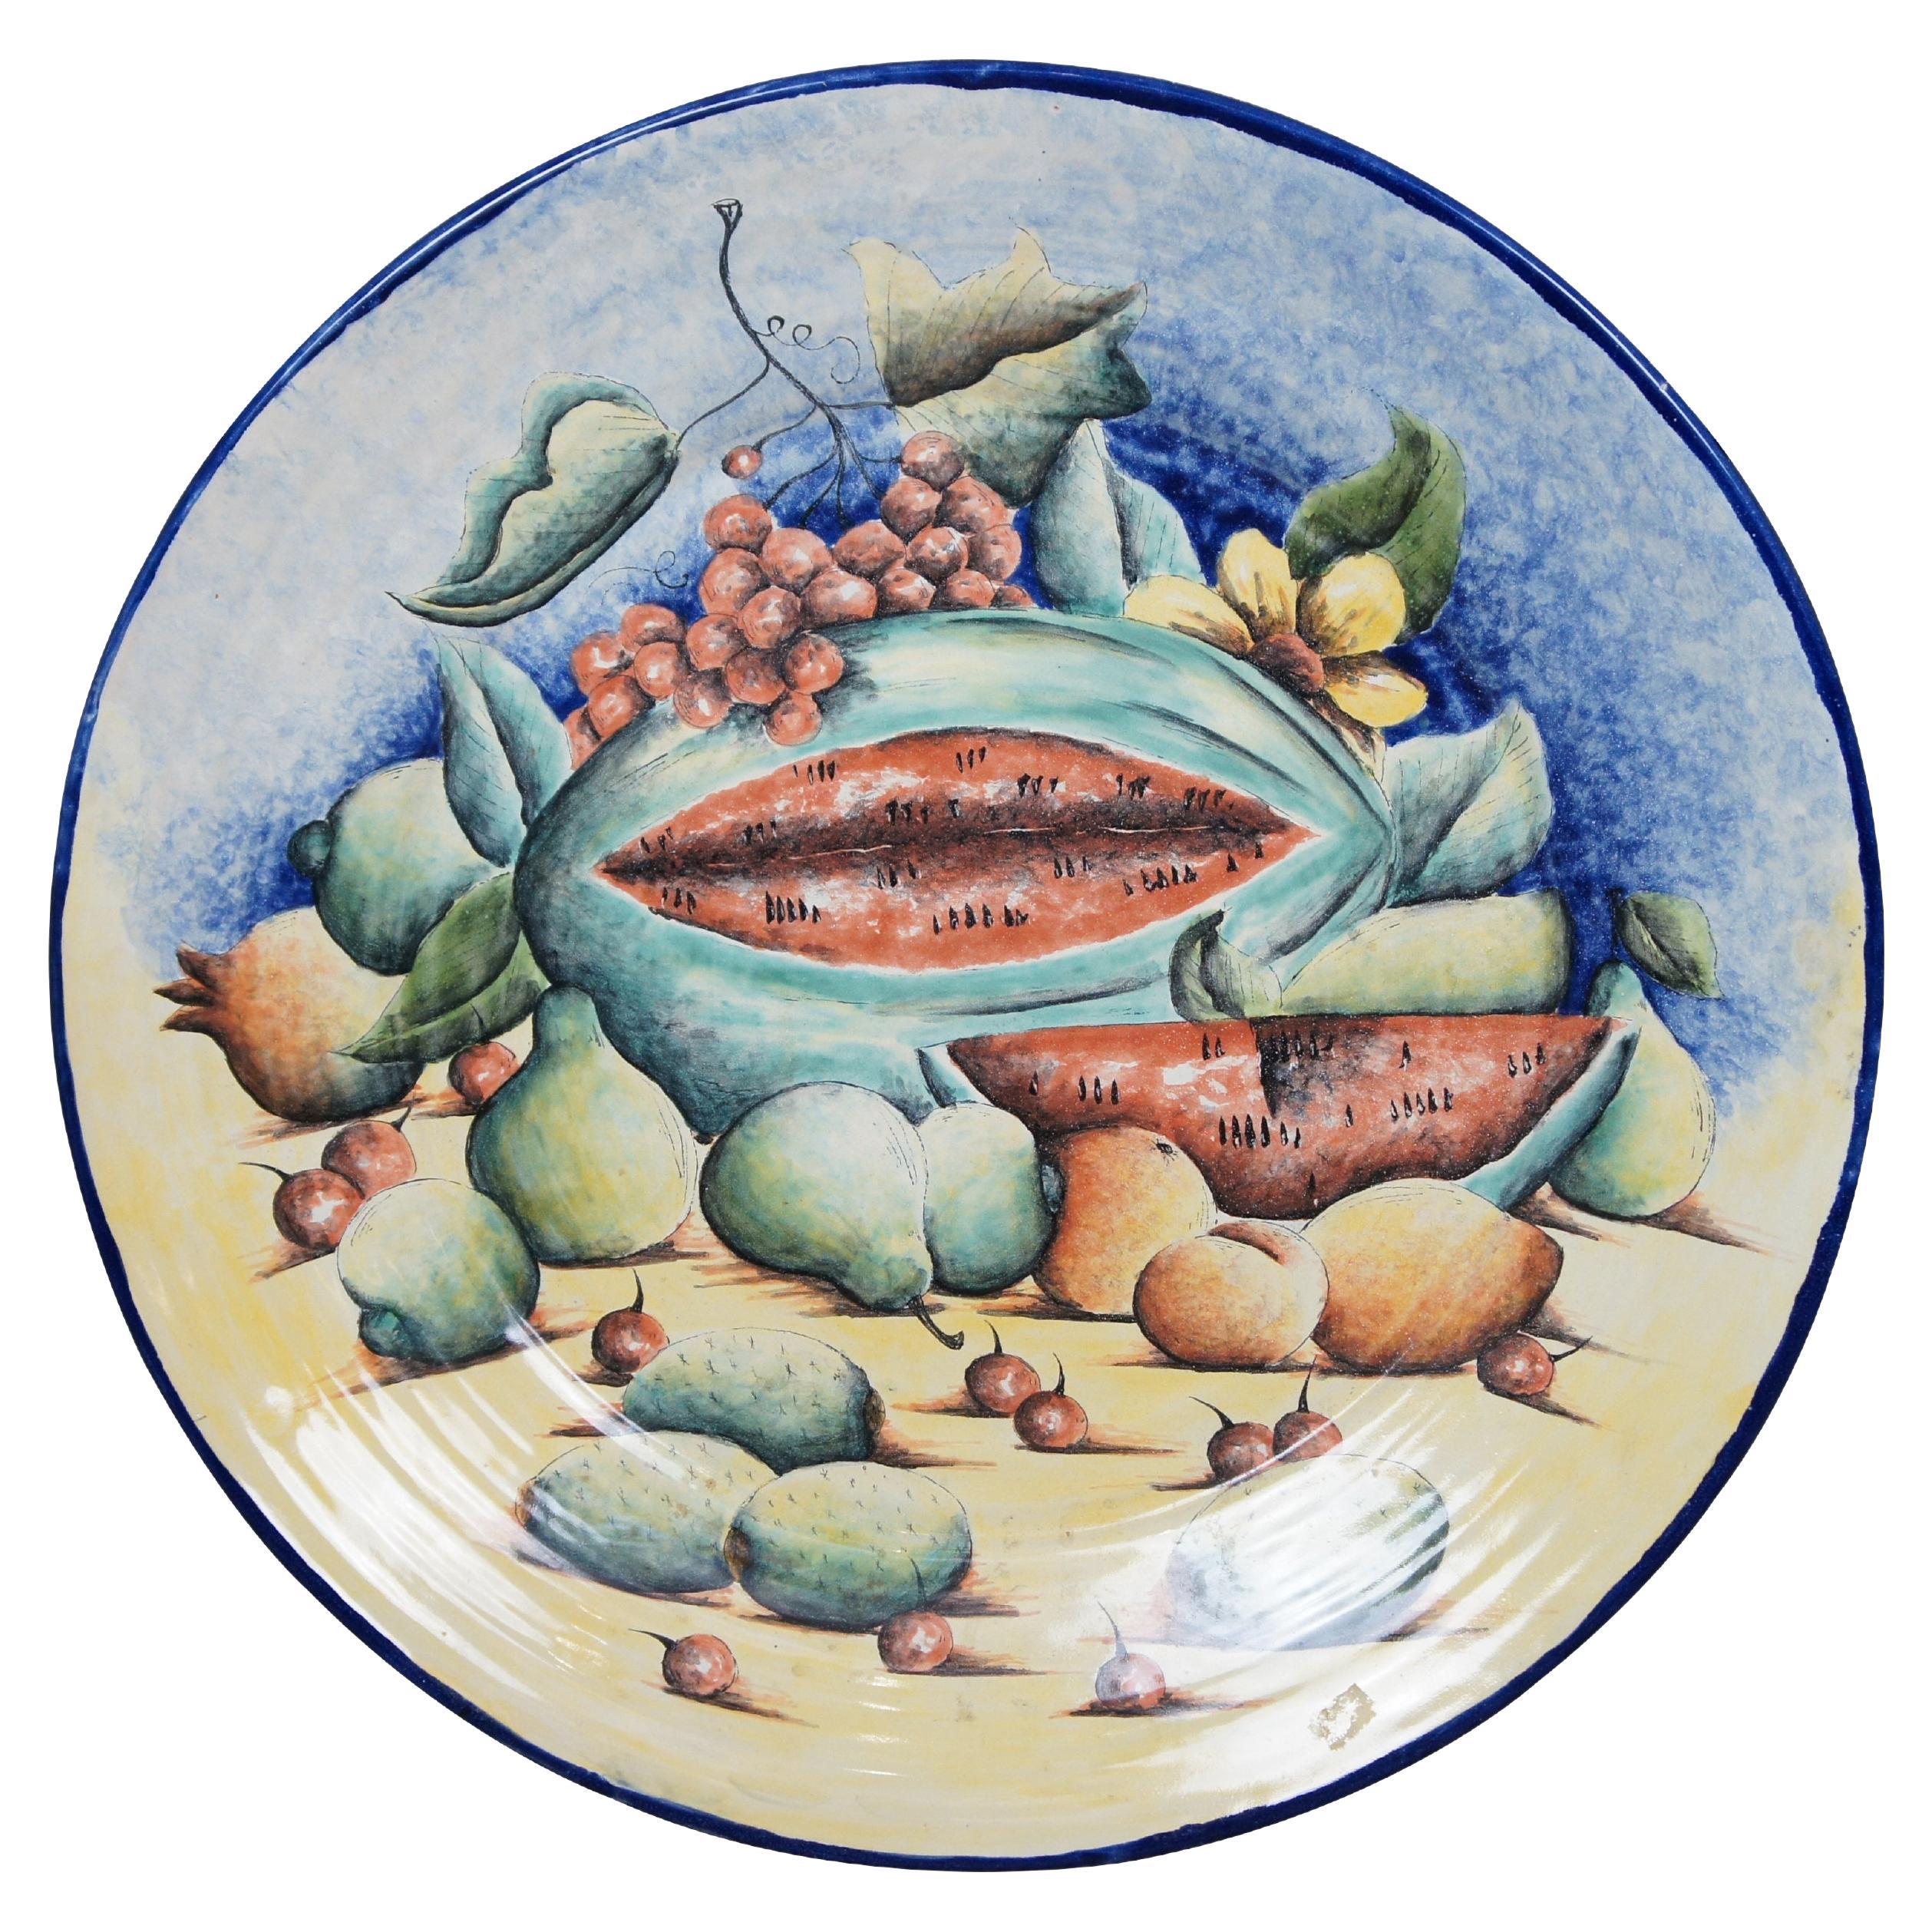 Plaque murale 24" en céramique polychrome peinte Majolique mexicaine Art Pottery Charger